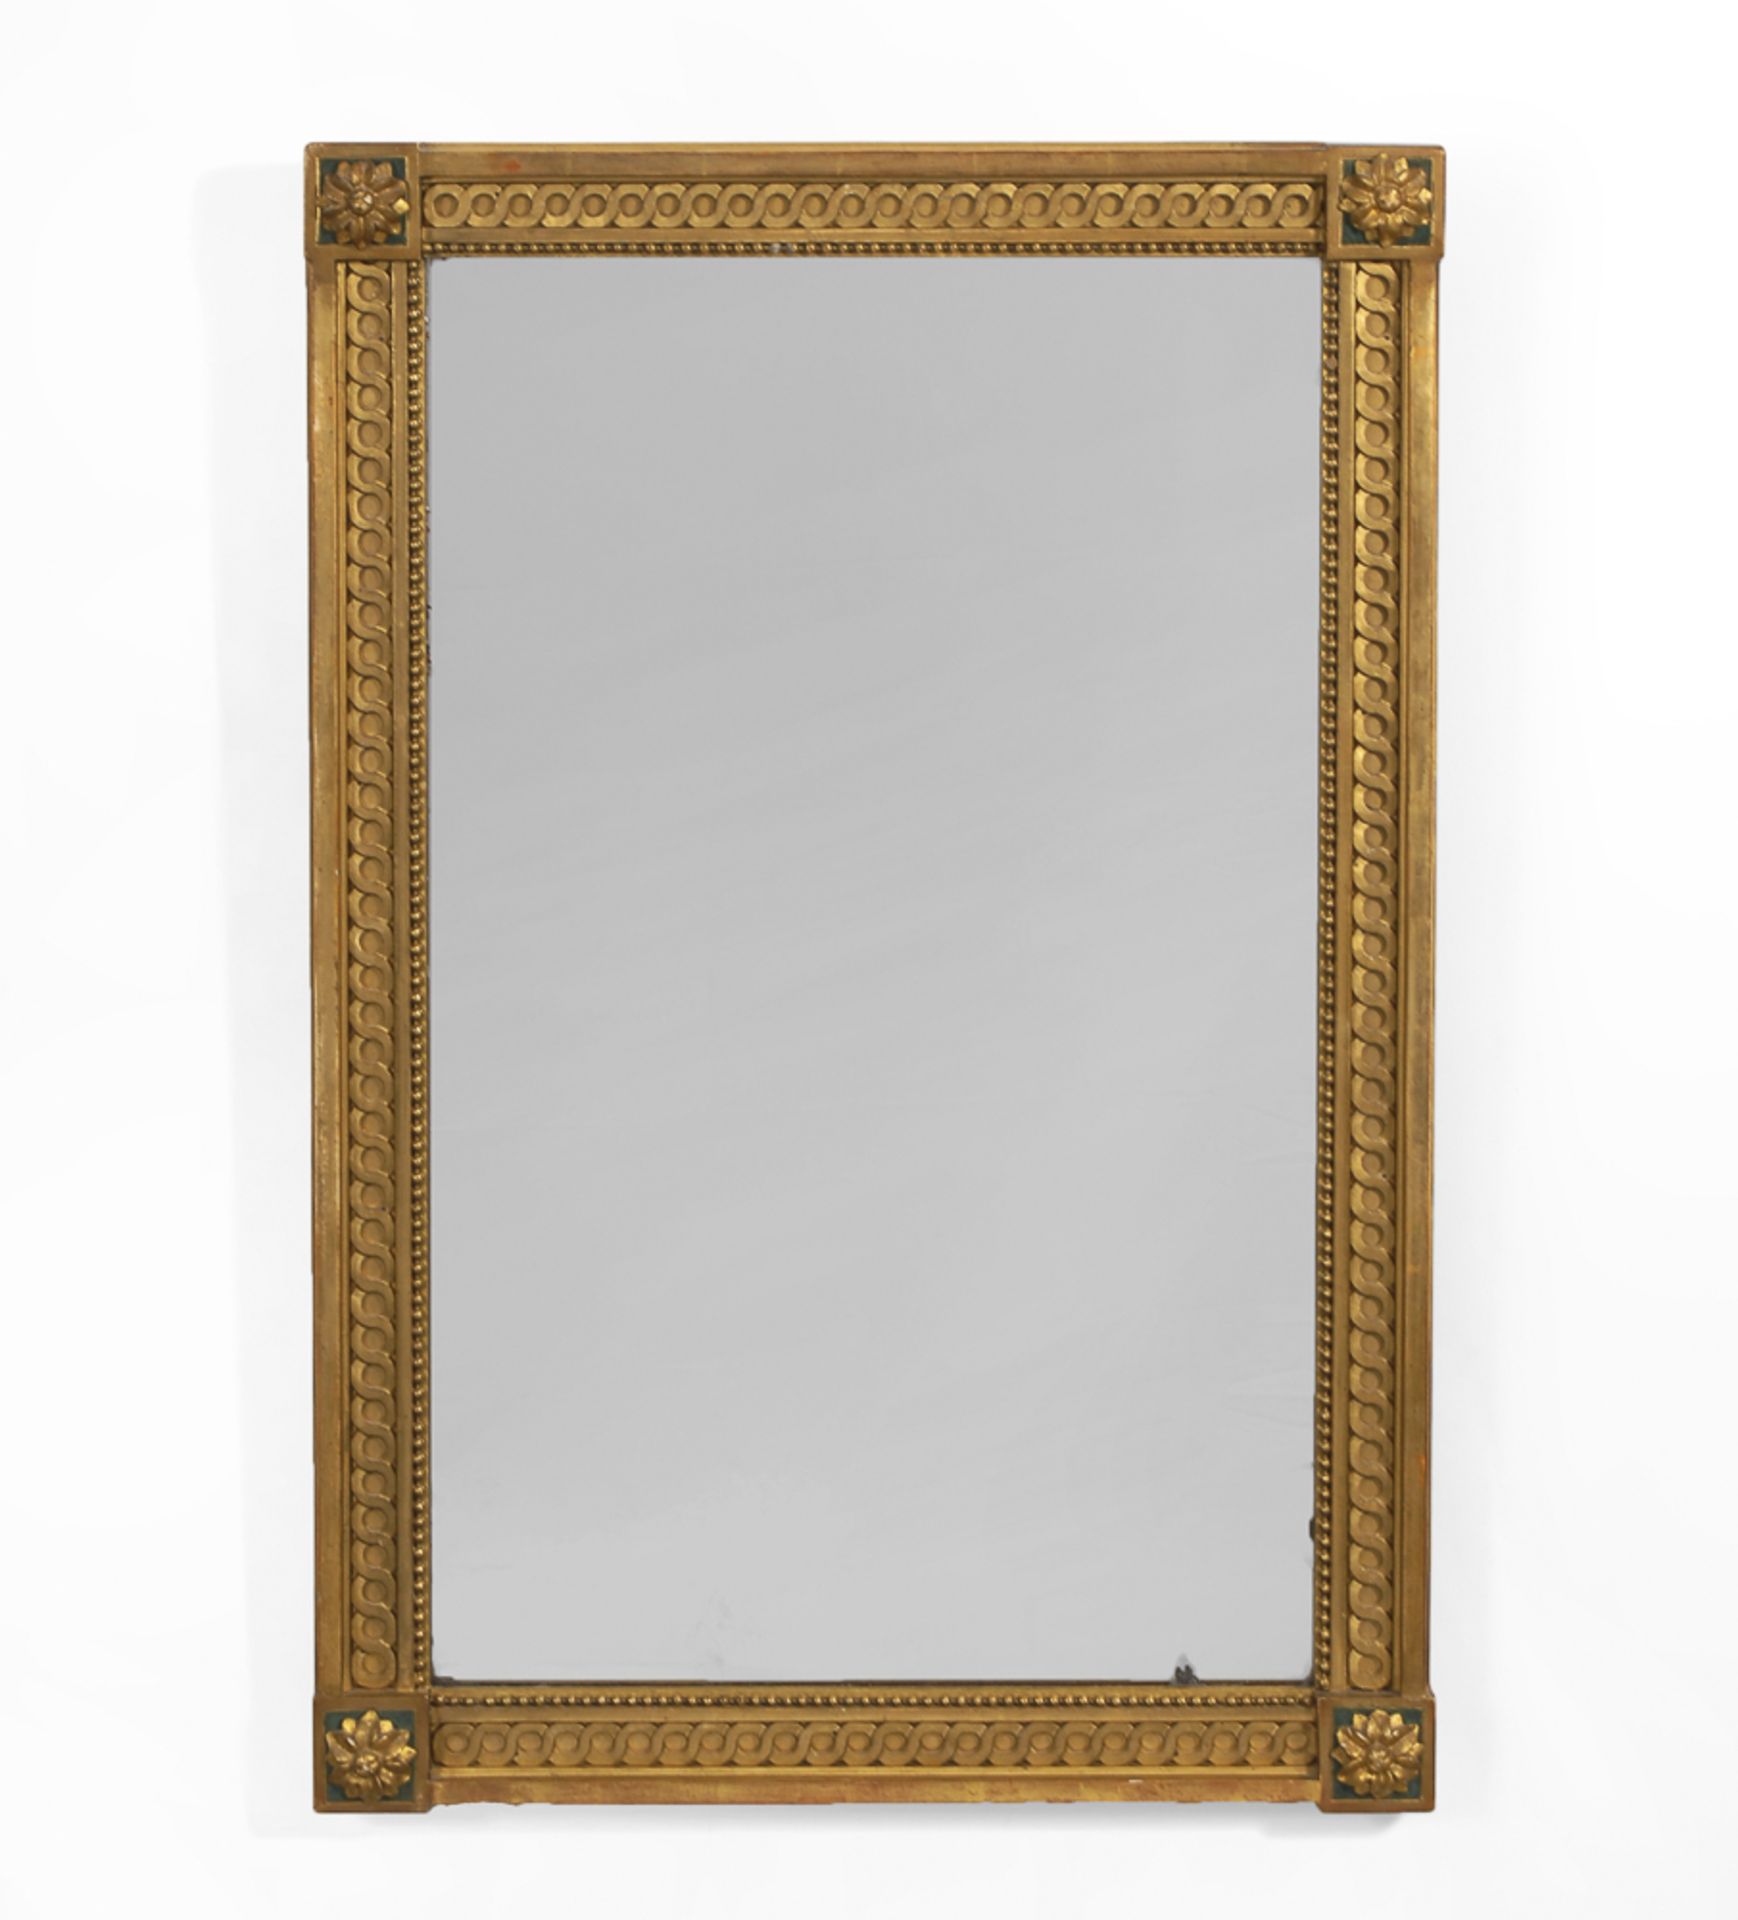 Wandspiegel.Nach 1900. Nussbaum und Stuck. 96,5 x 63,5 cm.Goldfarbener Stuckspiegel mit Perlstab-